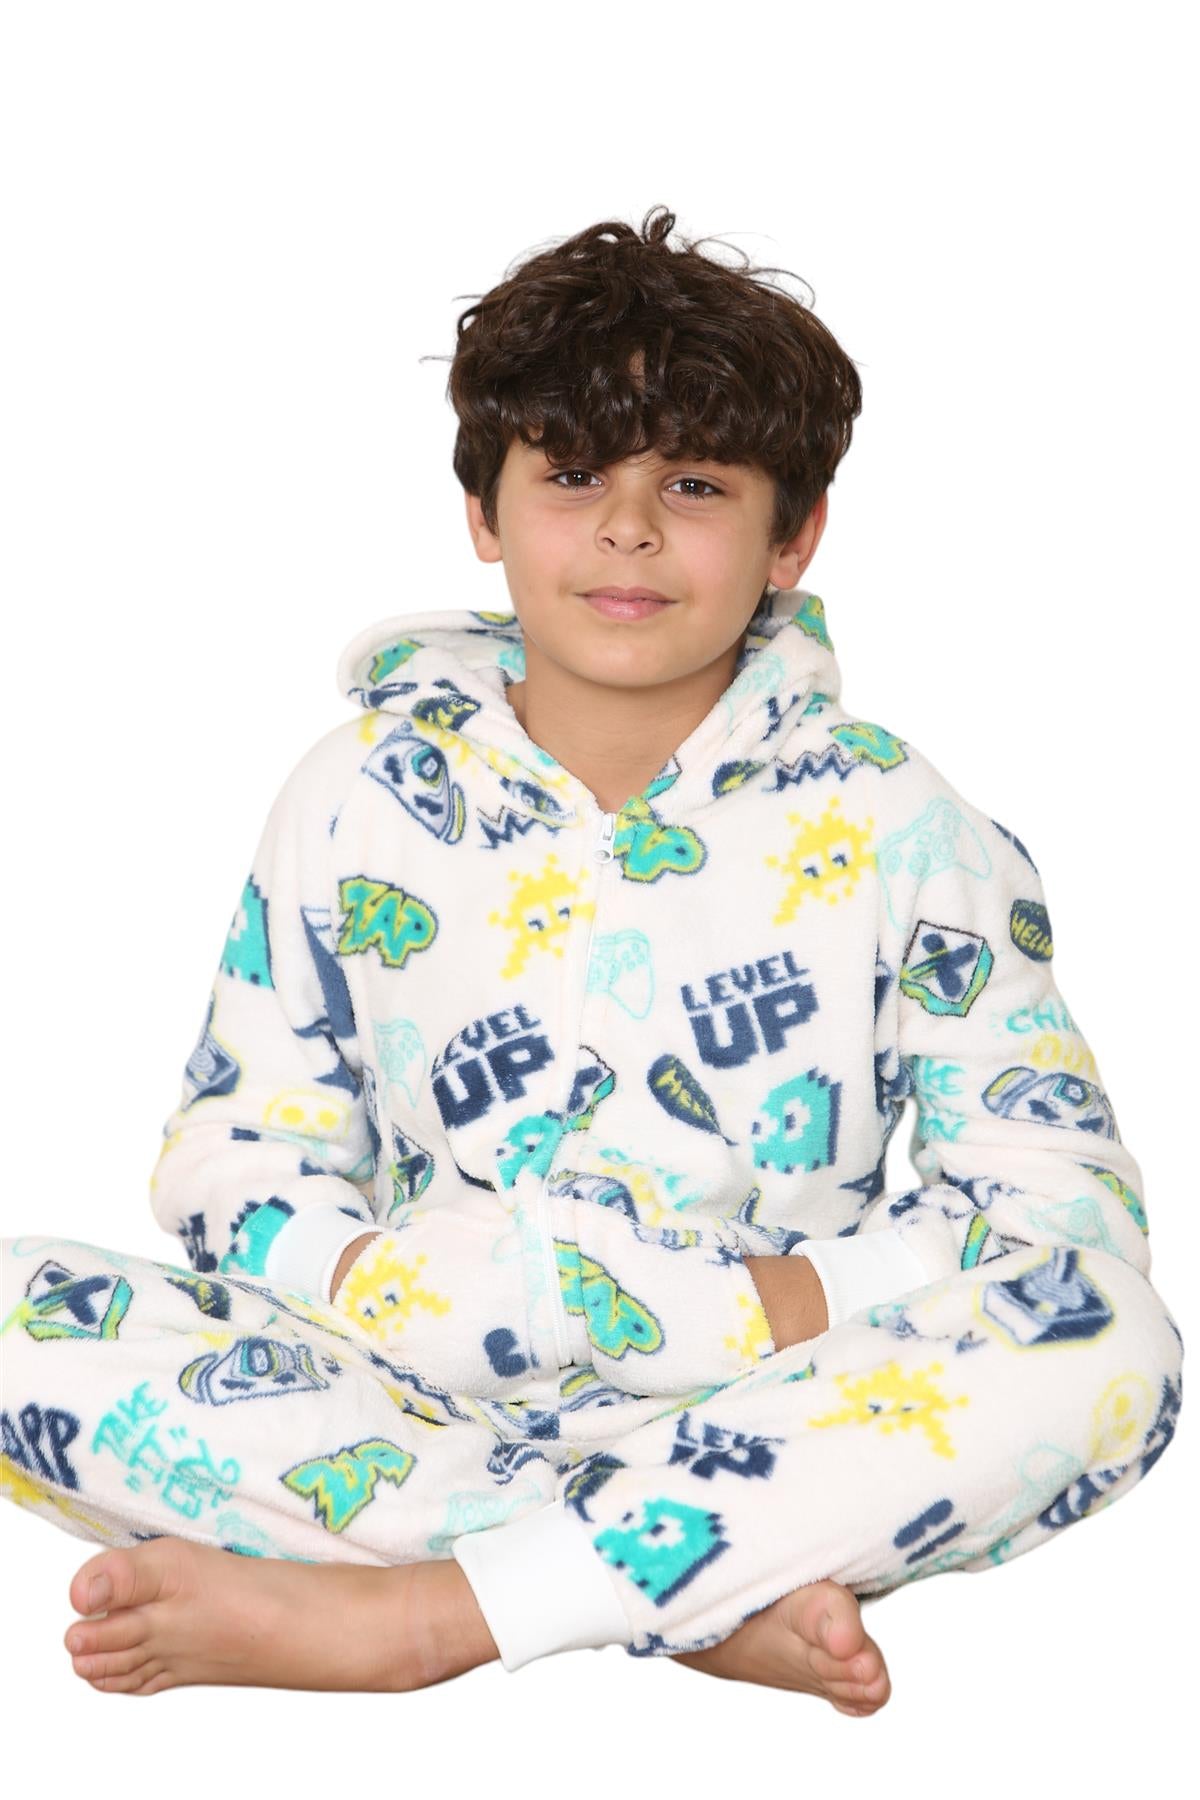 Kids Fleece A2Z Onesie One Piece Pyjamas Level Up Print Sleepsuit For Boys Girls